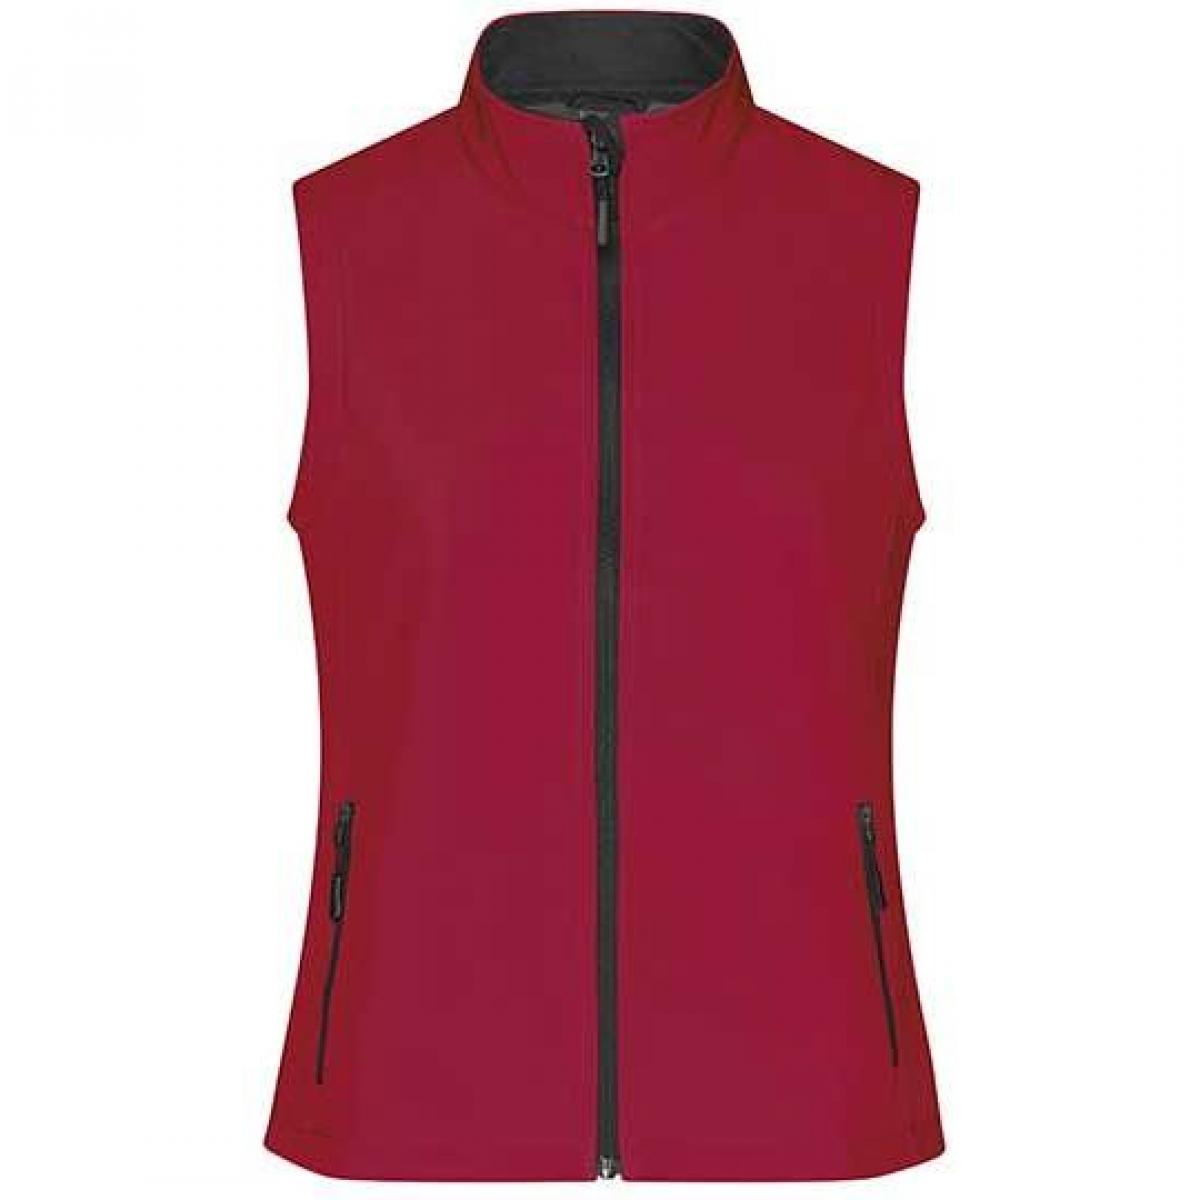 Hersteller: James+Nicholson Herstellernummer: JN1127 Artikelbezeichnung: Damen Promo Softshell Vest / Wasserabweisend, winddicht Farbe: Red/Black